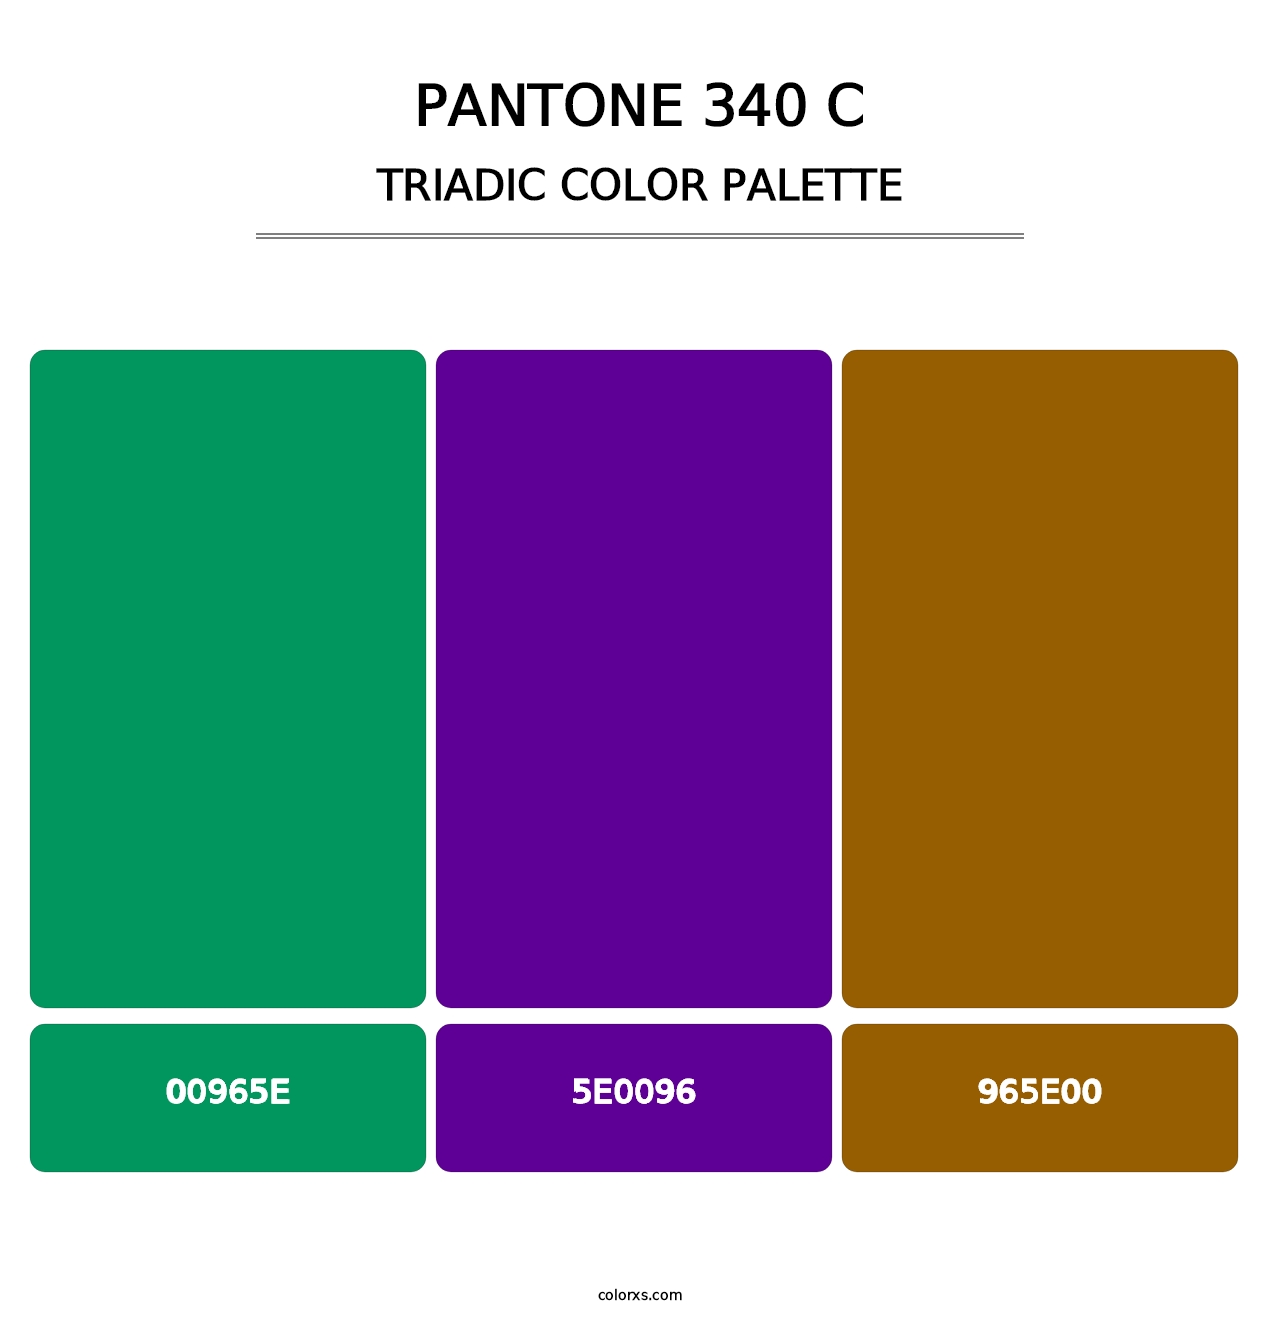 PANTONE 340 C - Triadic Color Palette